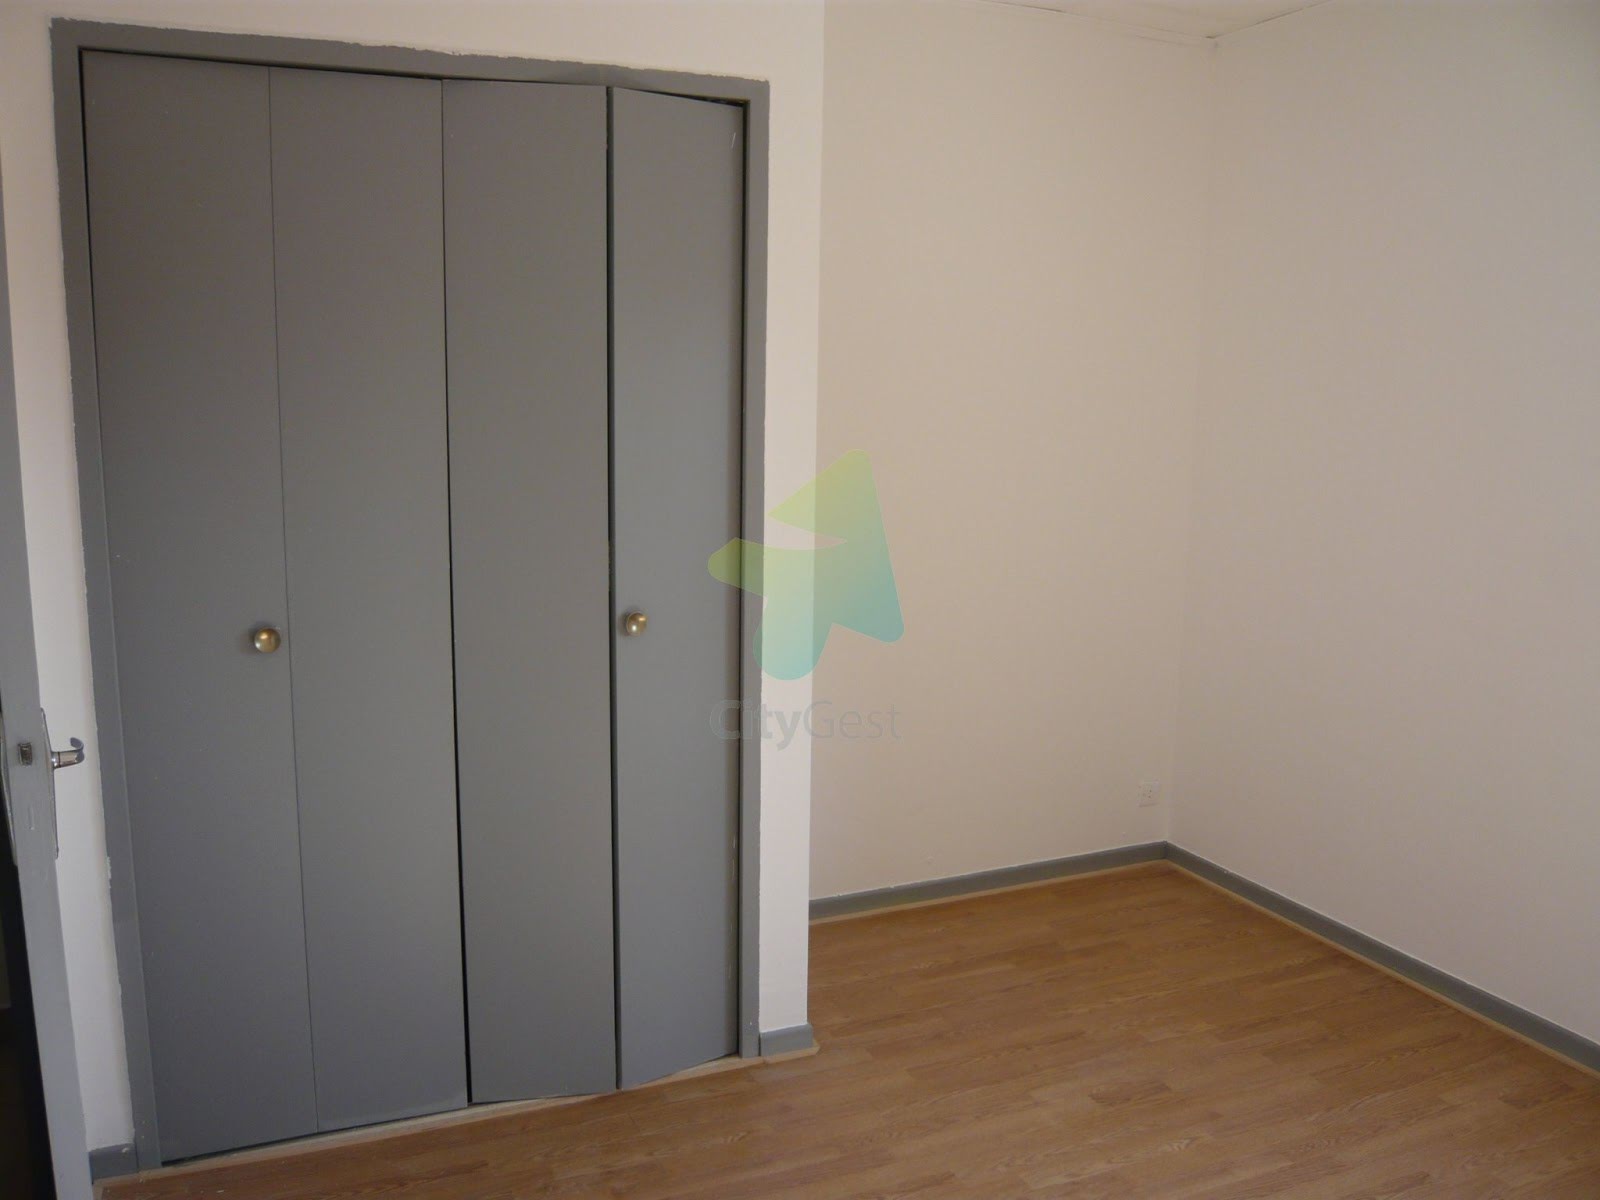 Location appartement 2 pièces 45,13 m2